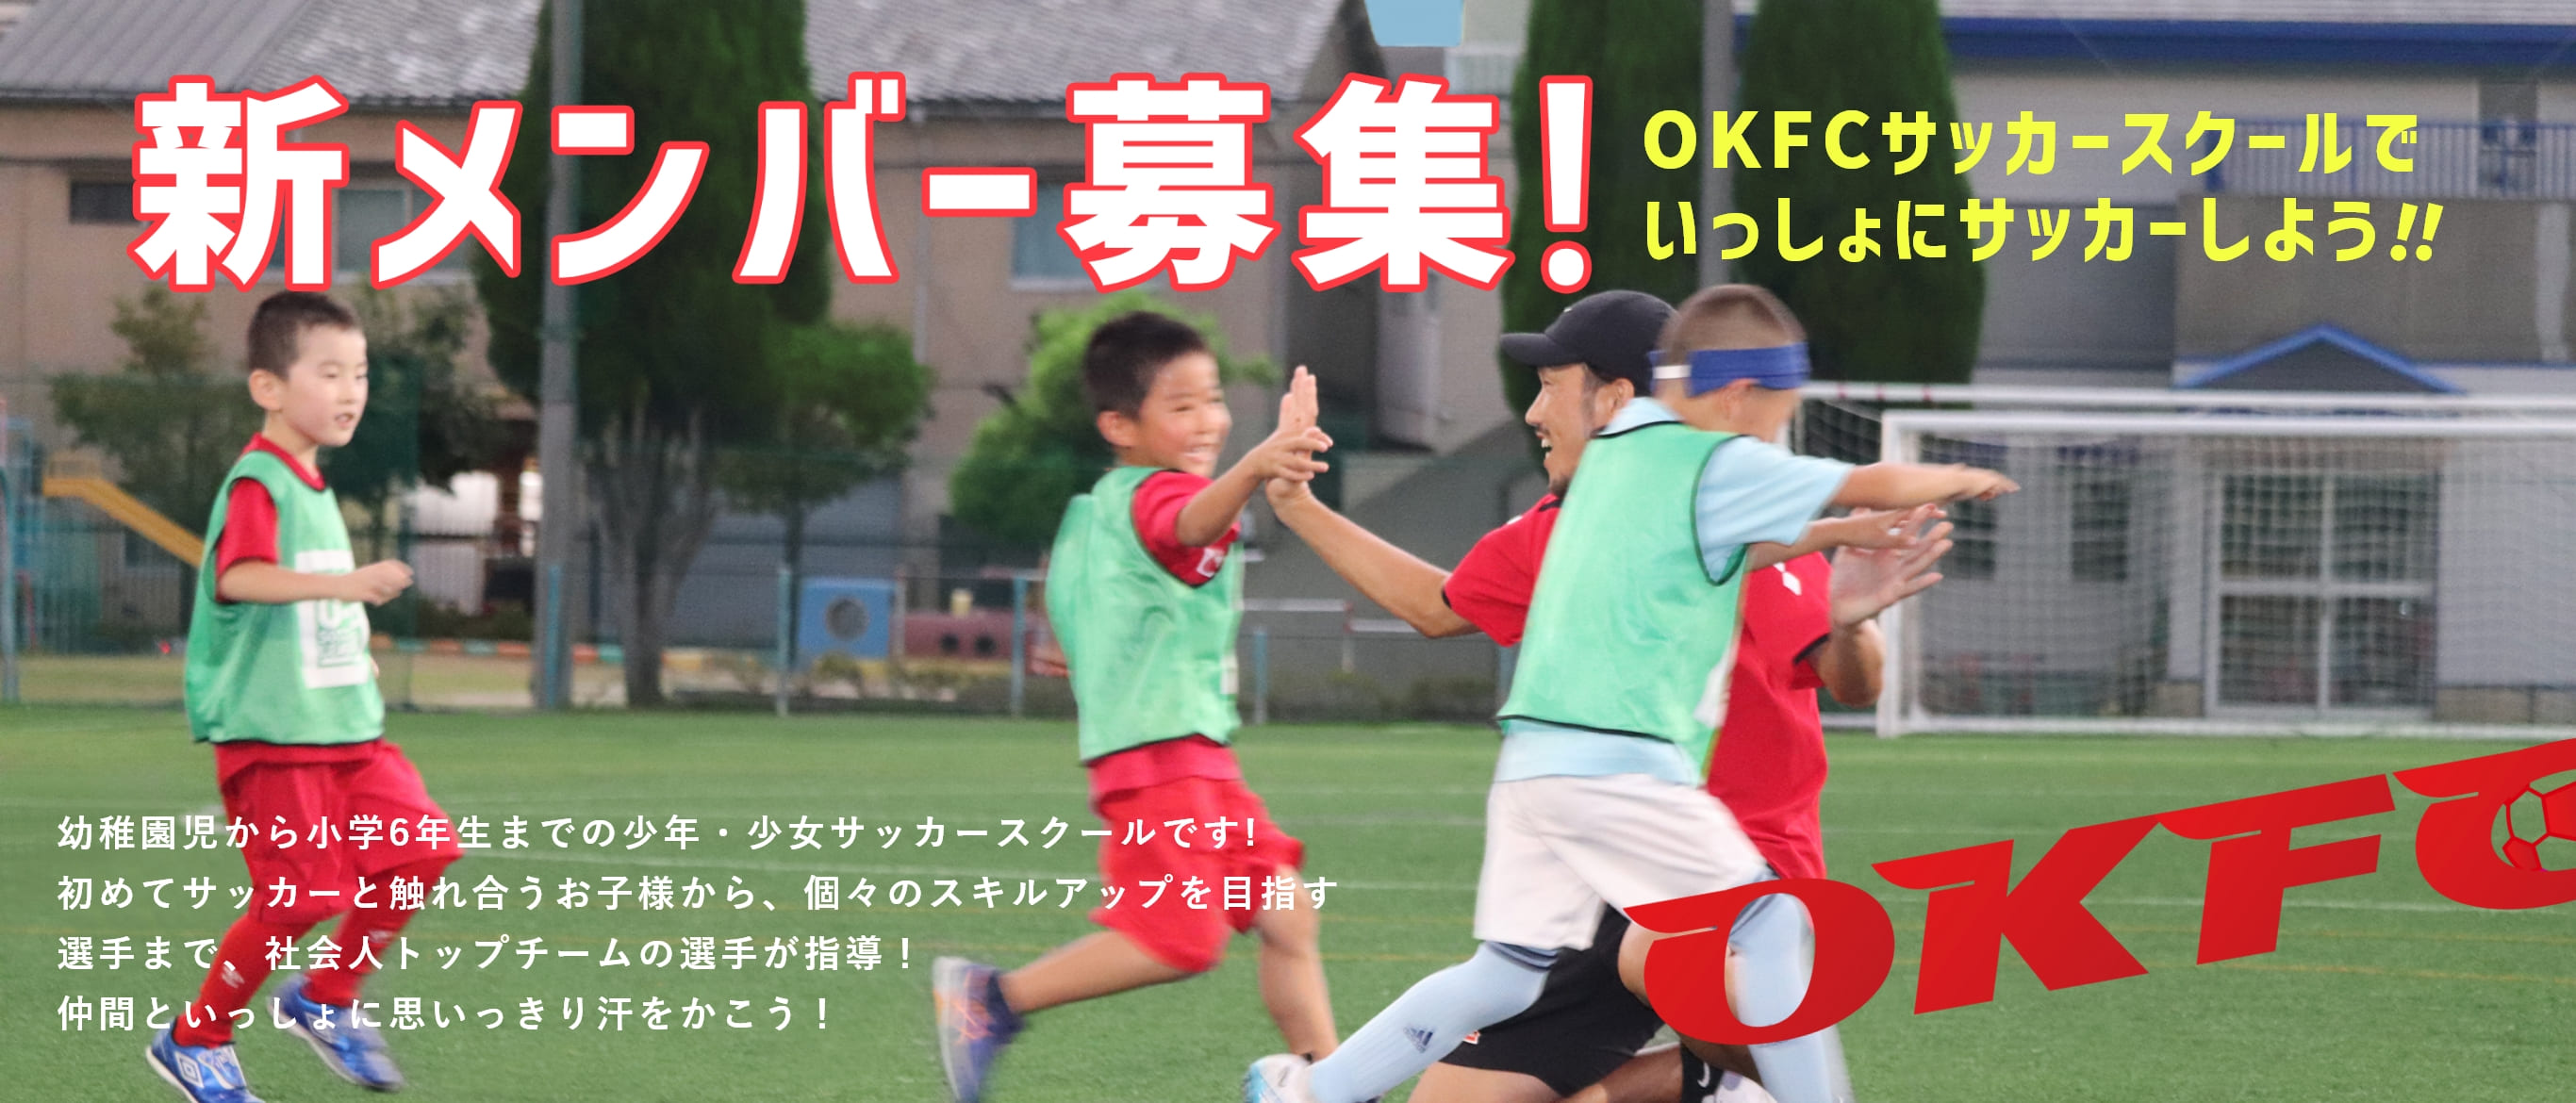 新メンバー募集！OKFCサッカースクールでいっしょにサッカーしよう!!